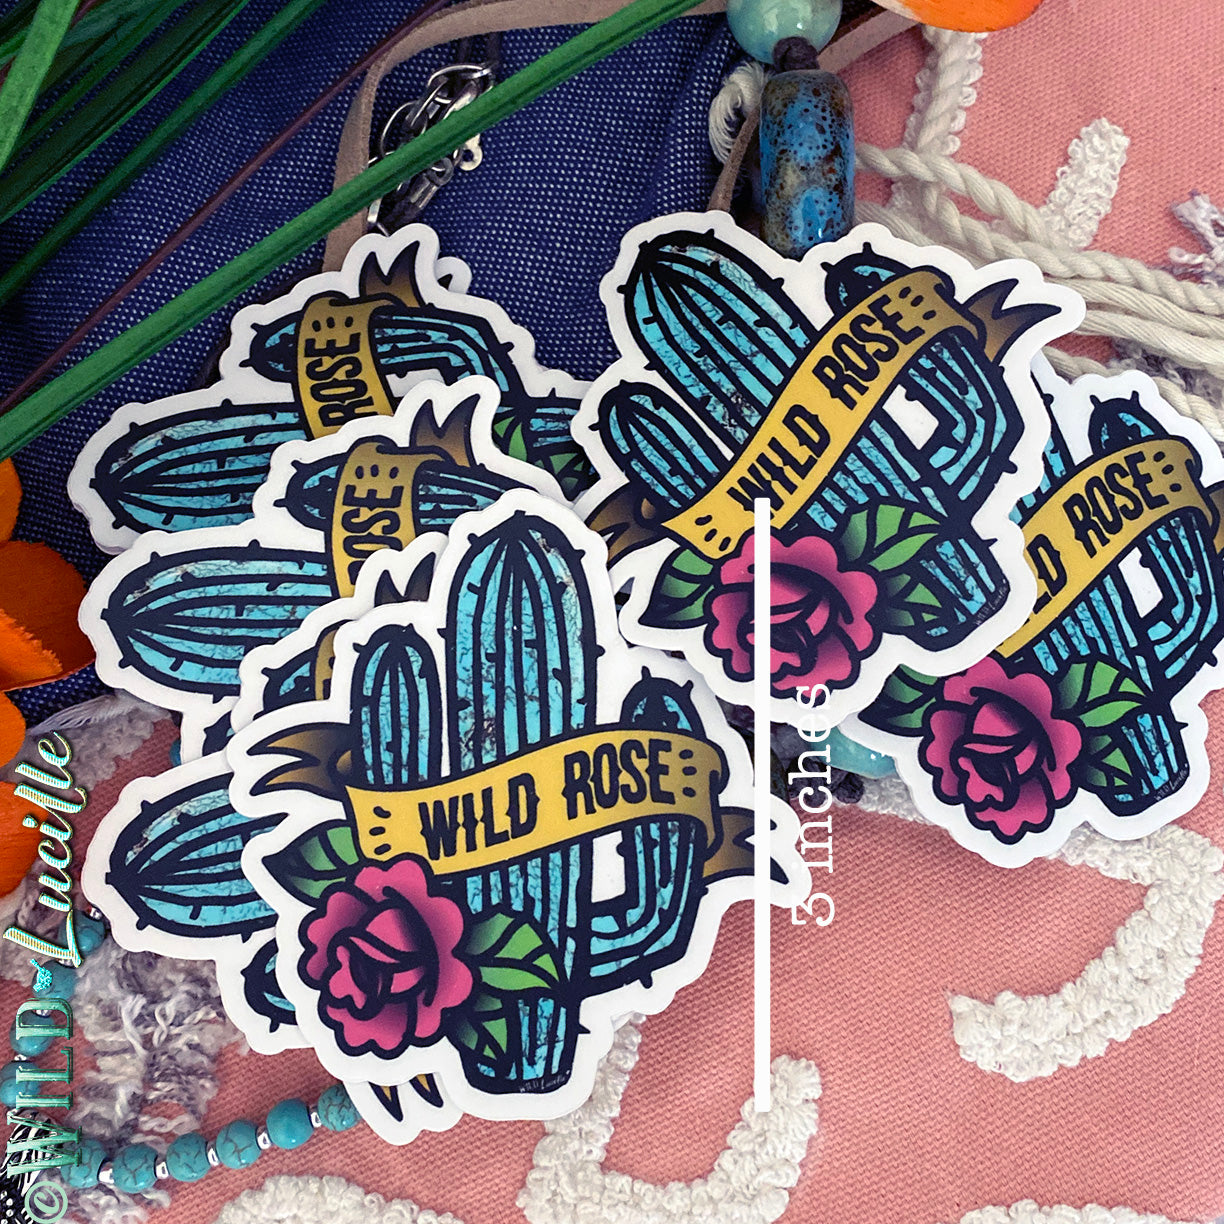 Wild Rose Turquoise Cactus - Vinyl Sticker Decals